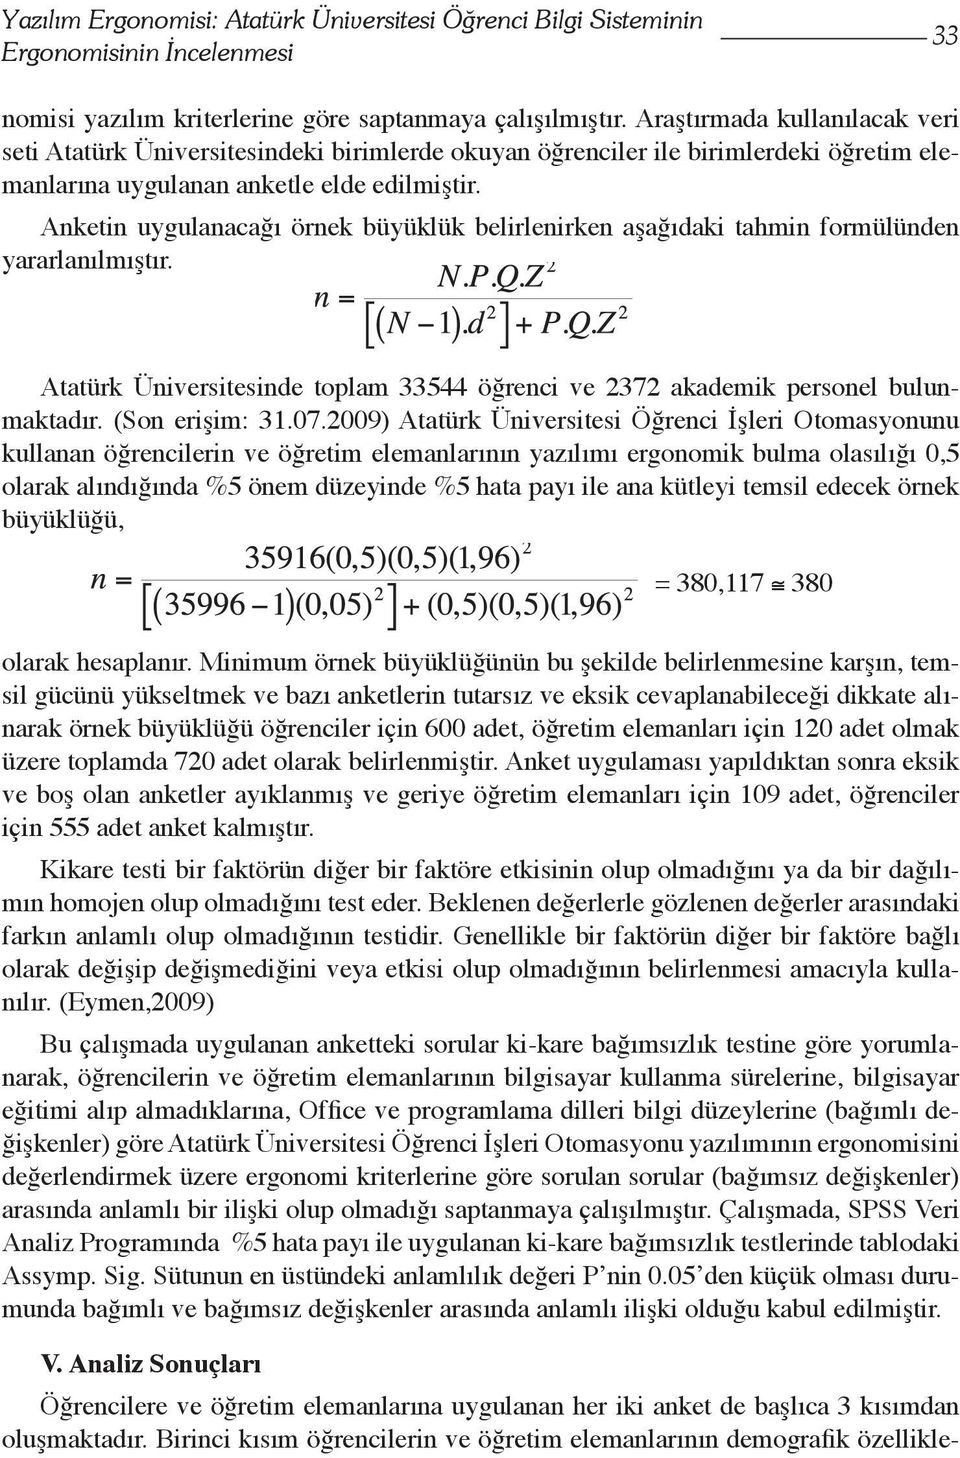 Anketin uygulanacağı örnek büyüklük belirlenirken aşağıdaki tahmin formülünden yararlanılmıştır. Atatürk Üniversitesinde toplam 33544 öğrenci ve 2372 akademik personel bulunmaktadır. (Son erişim: 31.